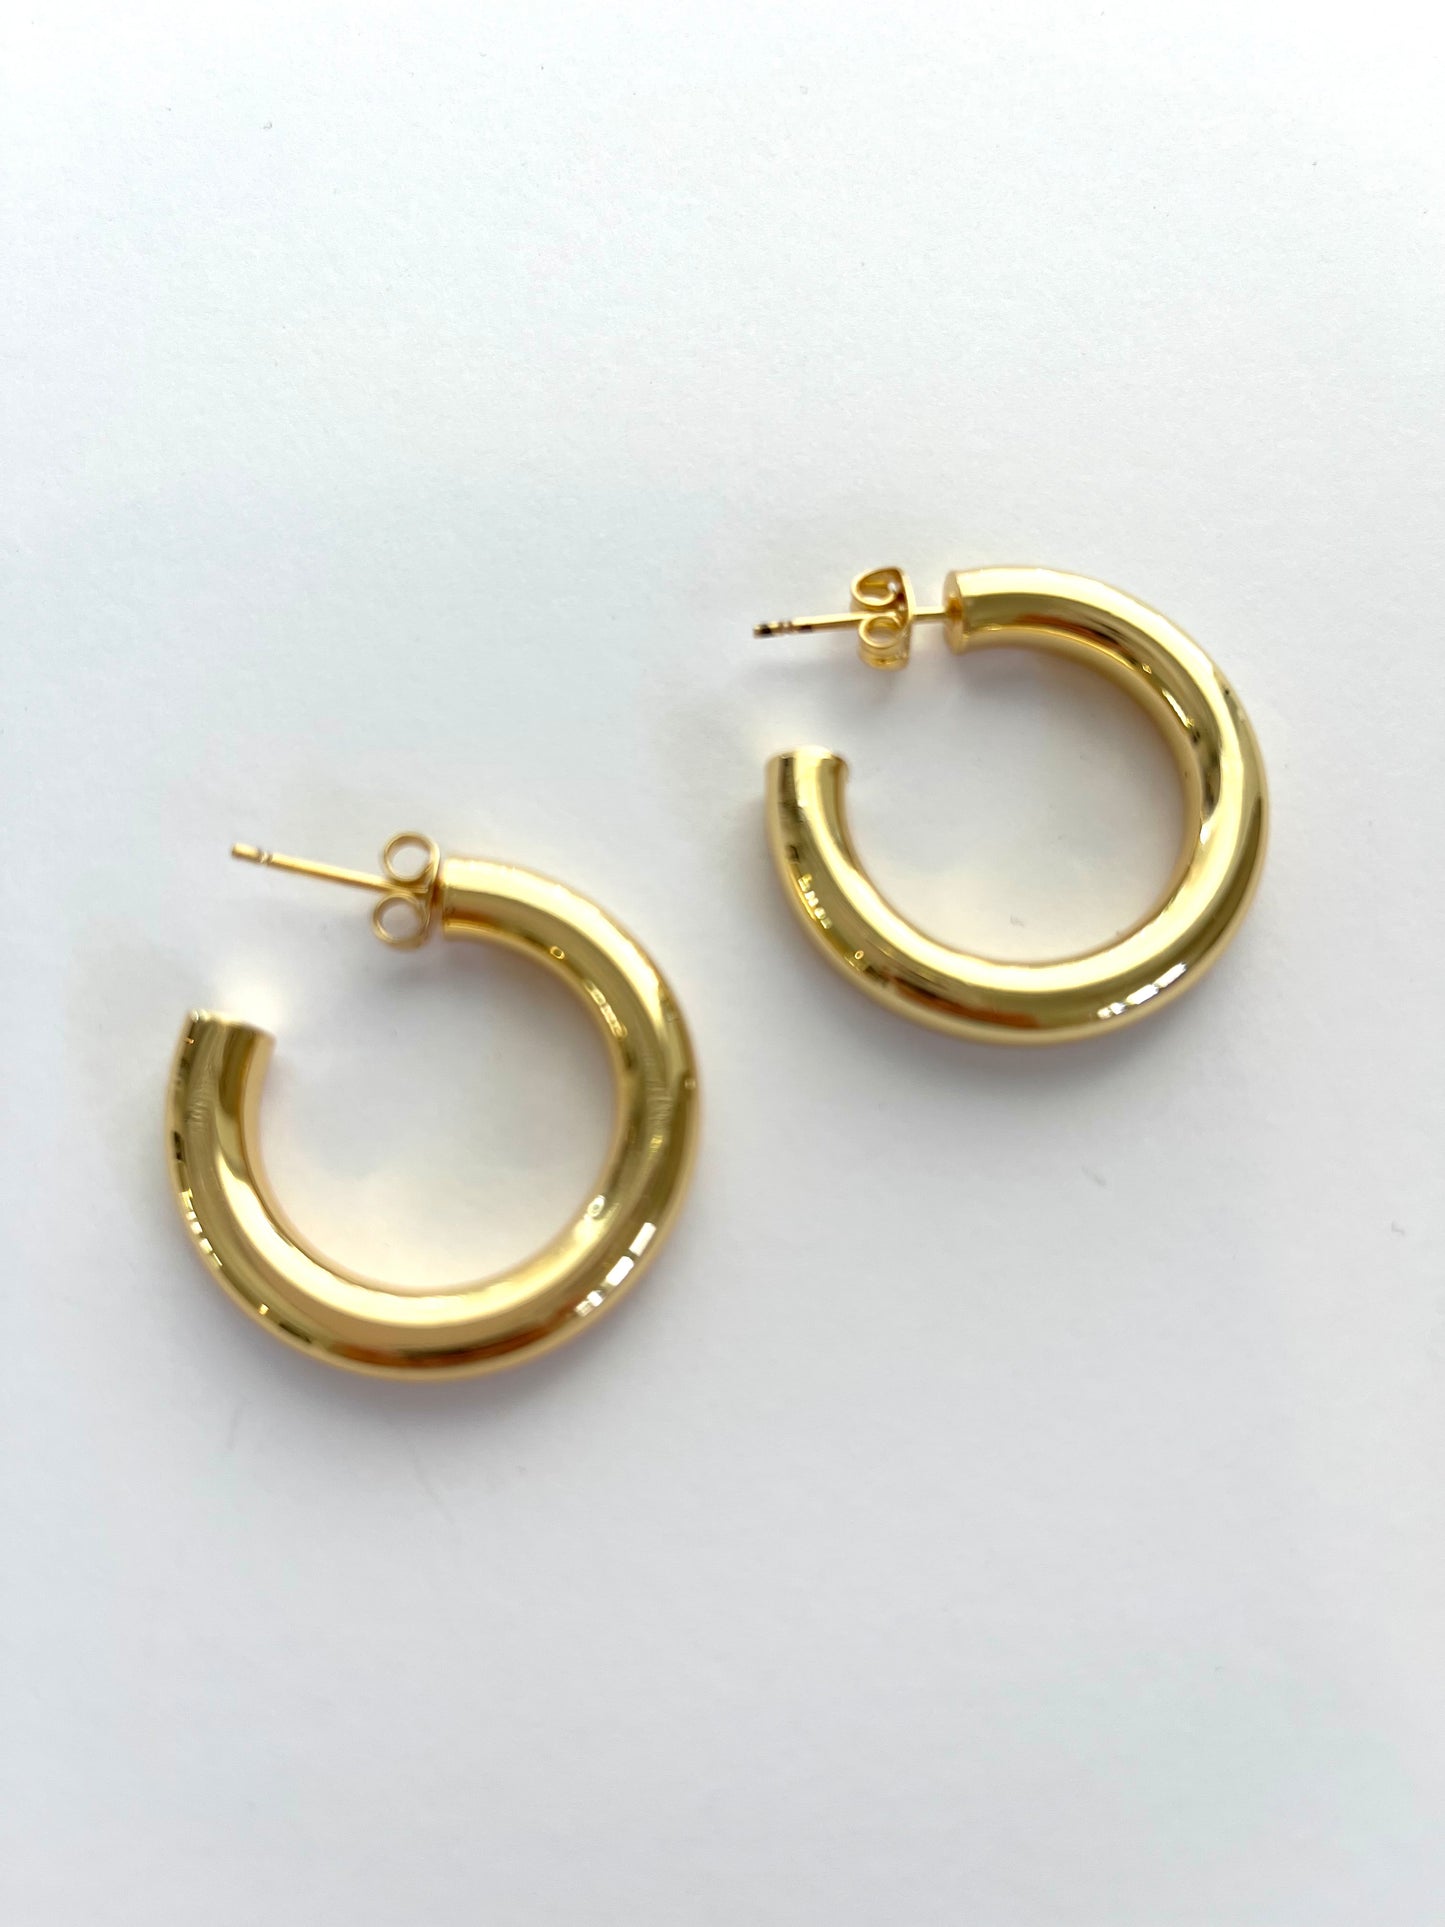 Medium sized hoop earrings